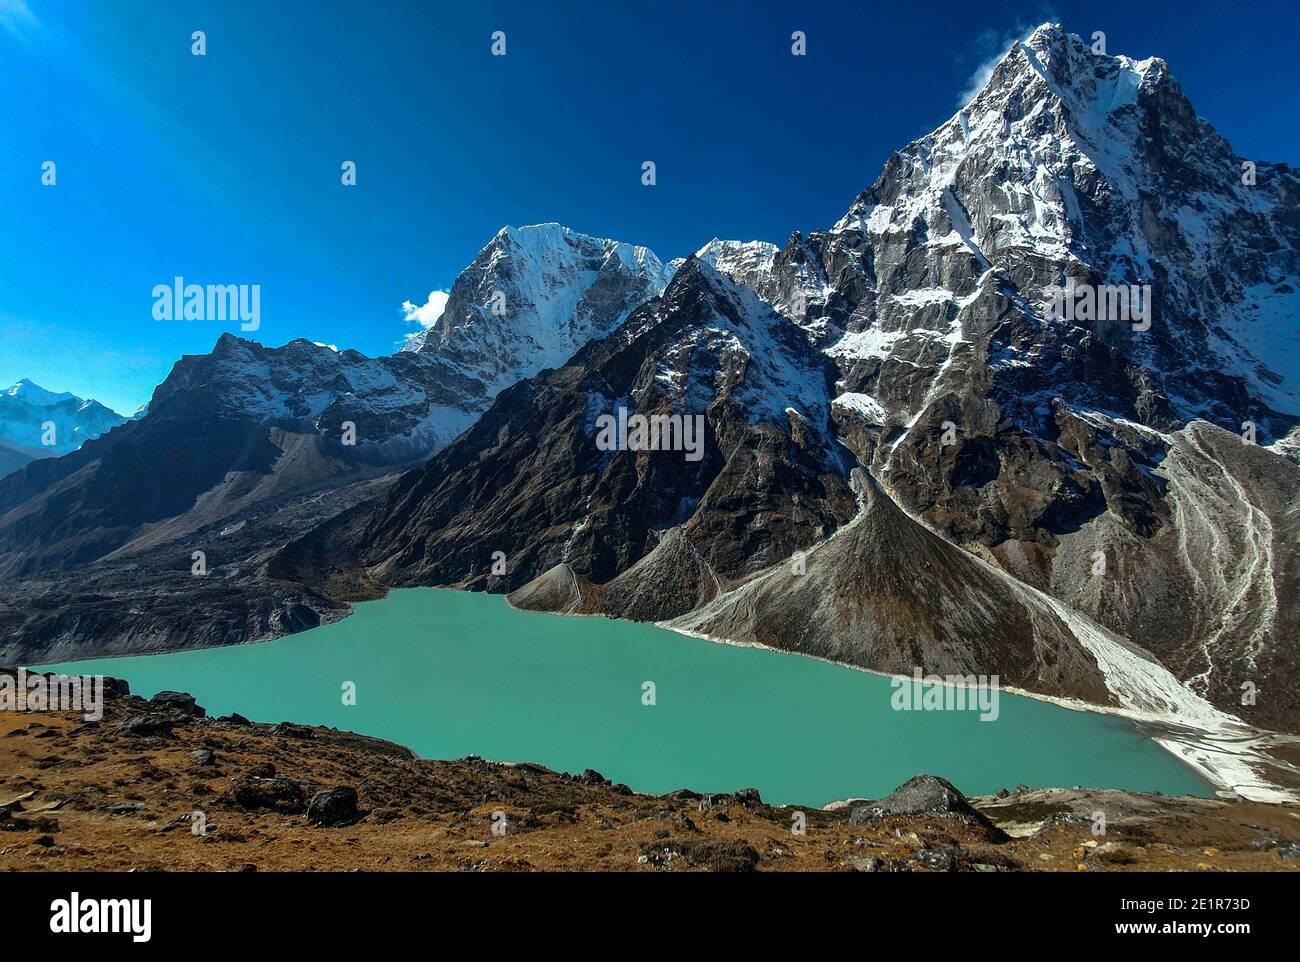 Höhenreisen / Landschaftsfotografie während einer Trekking- und Bergkletterexpedition durch den Himalaya in Nepal. Stockfoto